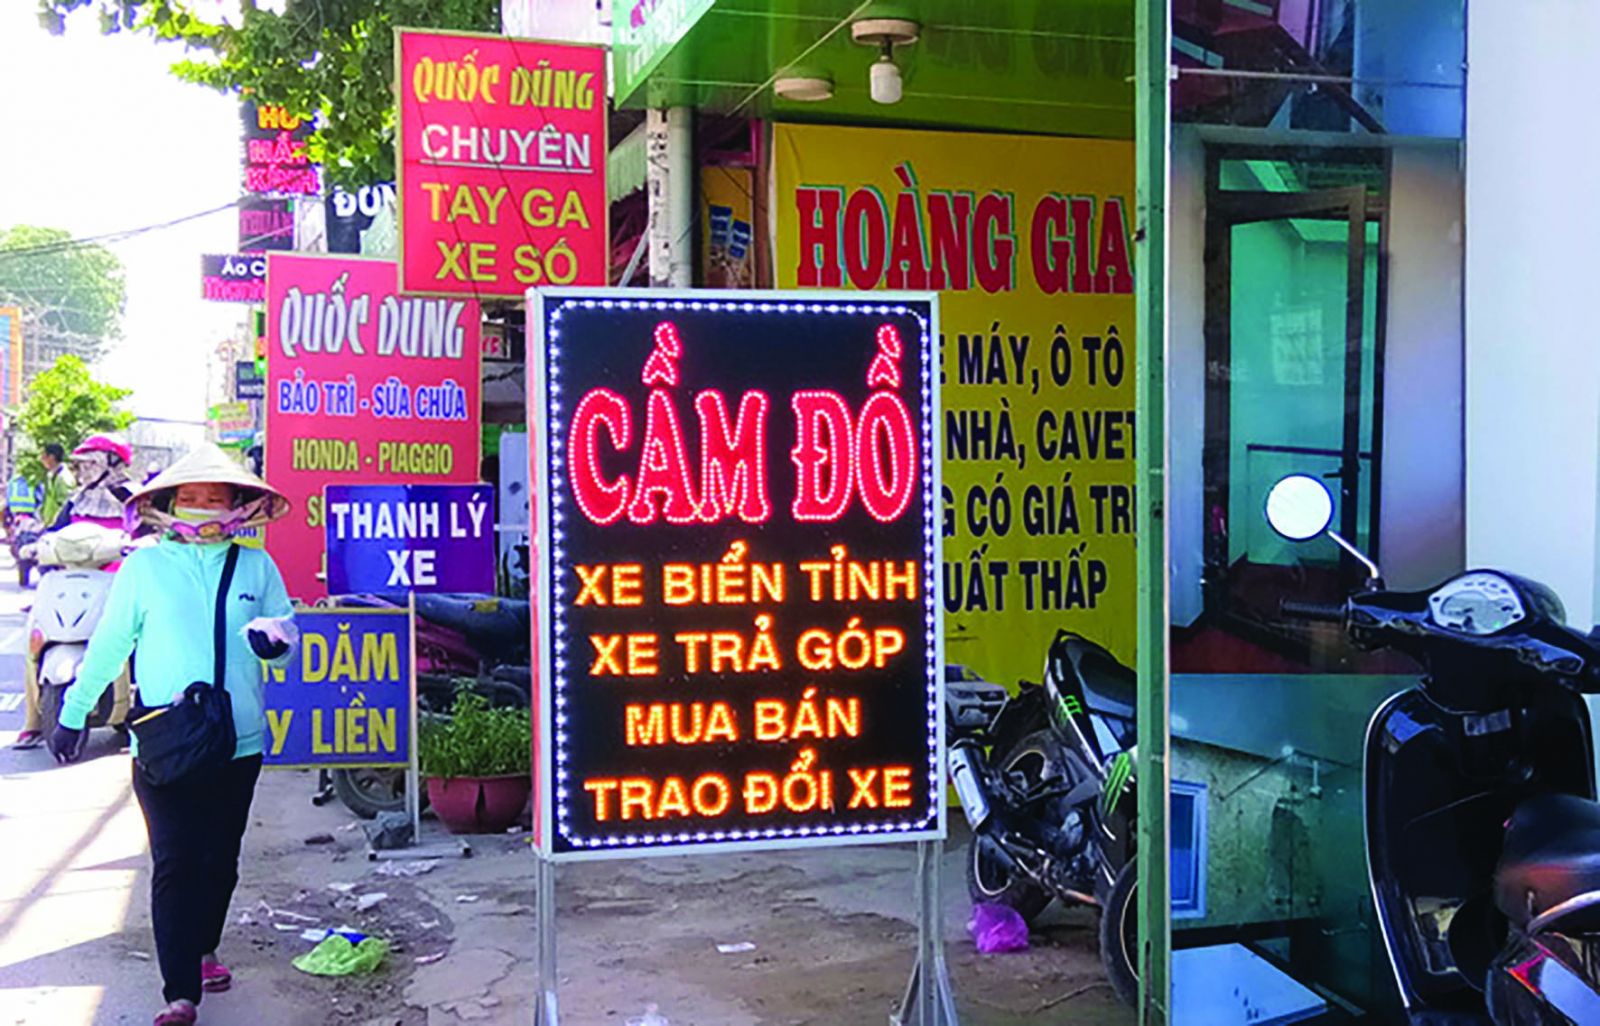 tiệm cầm đồ ở Đà Nẵng